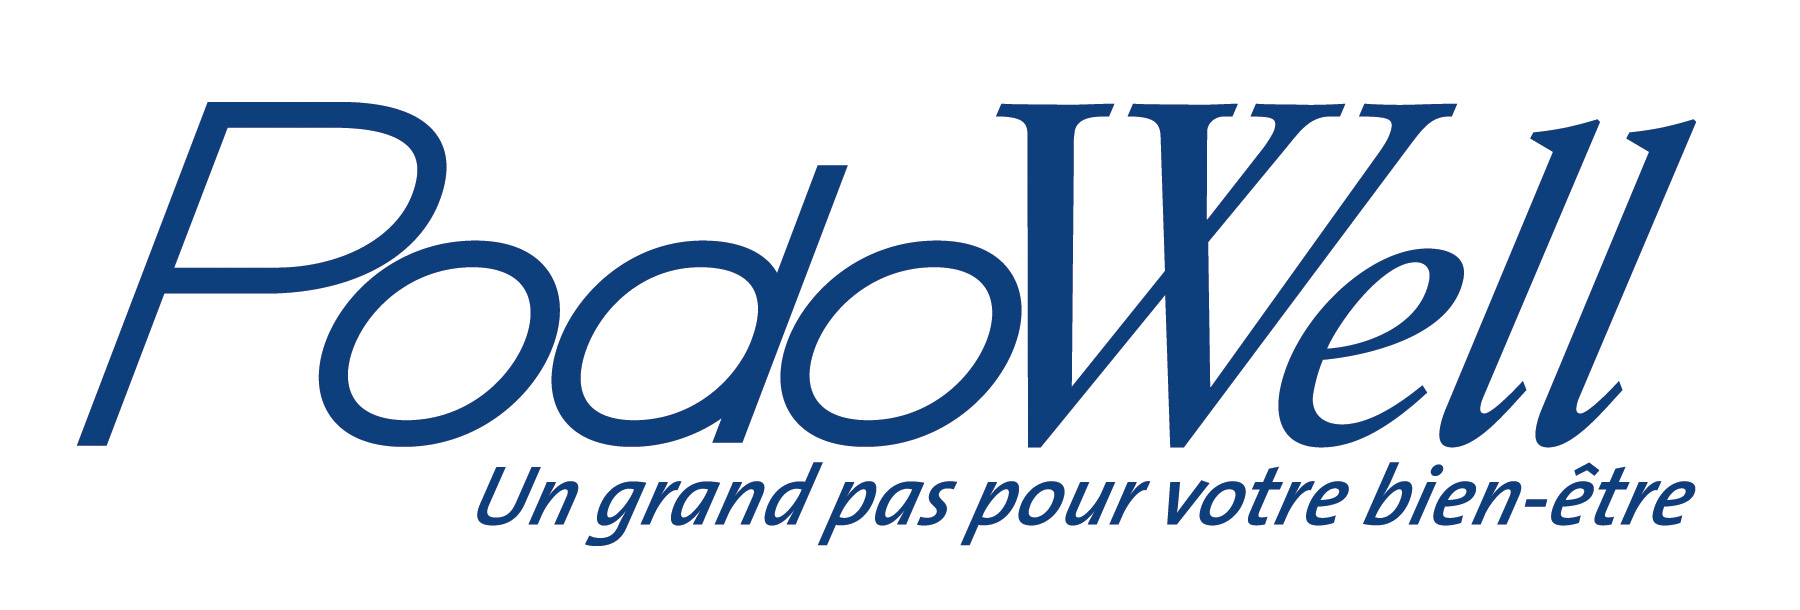 Podowell canada logo